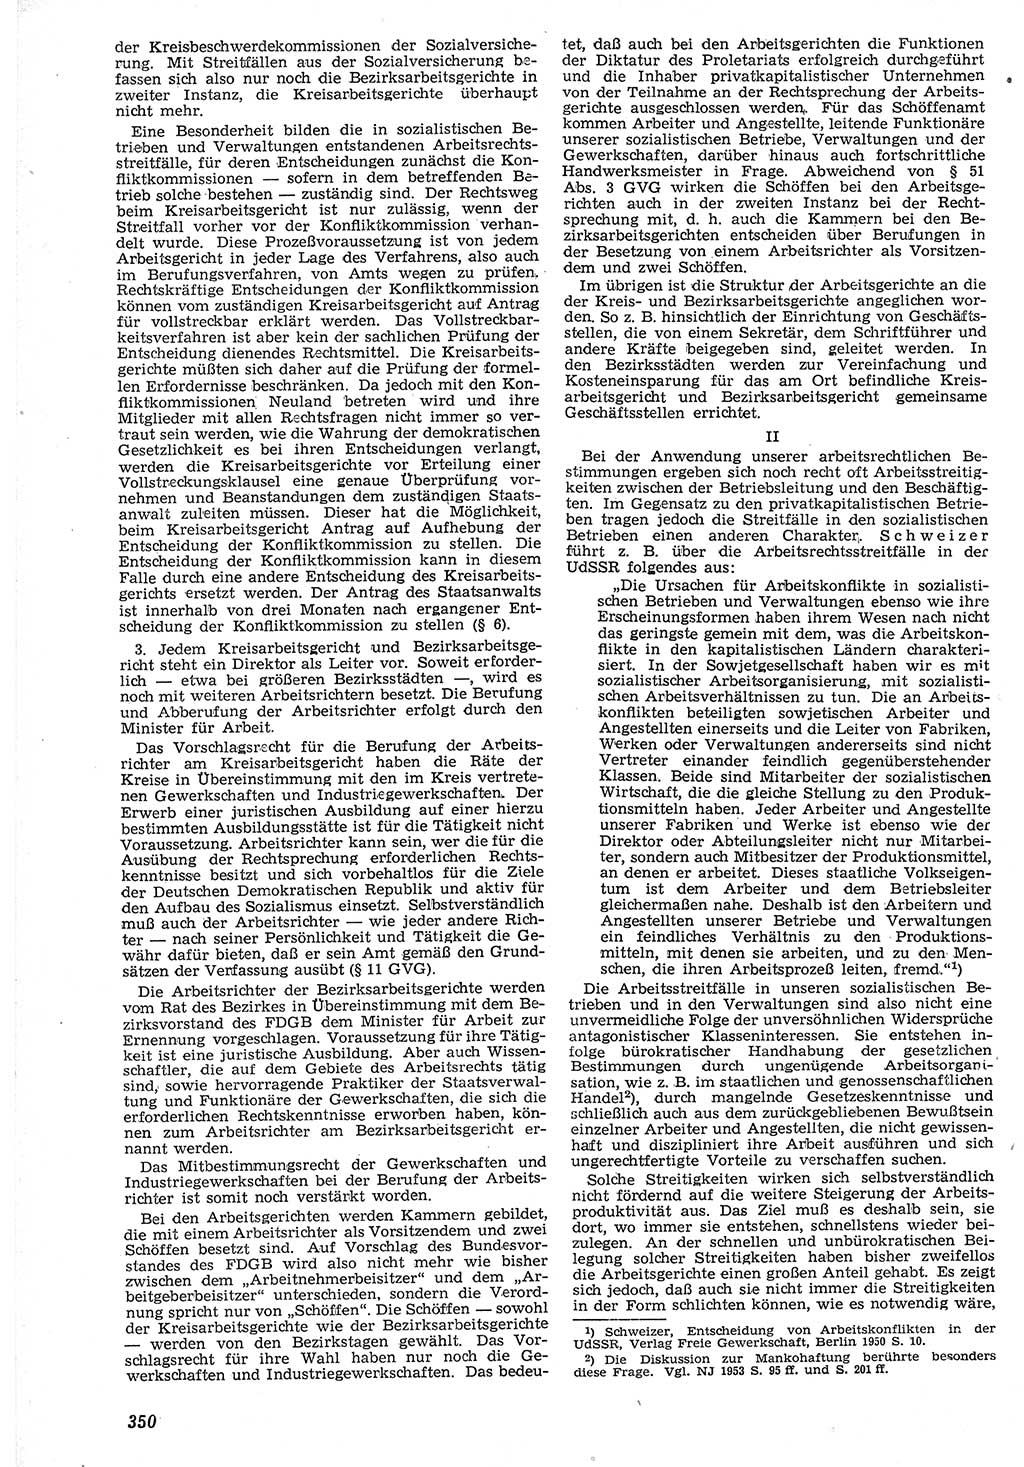 Neue Justiz (NJ), Zeitschrift für Recht und Rechtswissenschaft [Deutsche Demokratische Republik (DDR)], 7. Jahrgang 1953, Seite 350 (NJ DDR 1953, S. 350)